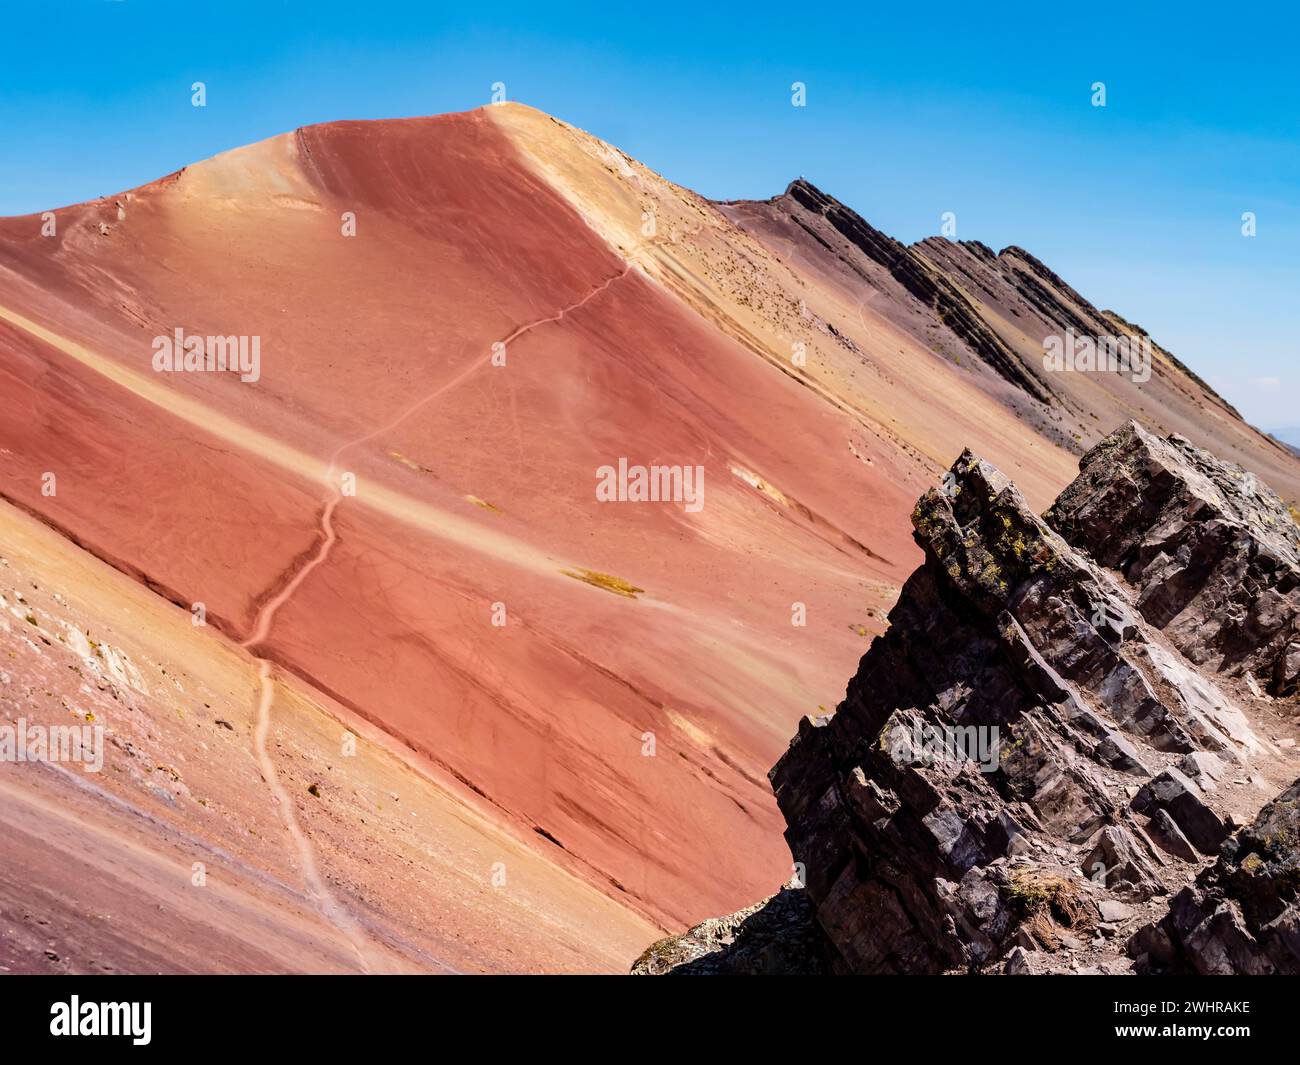 Farbige Felsen des Roten Tals (valle rojo) mit abenteuerlichem Pfad, der zum Gipfel des Berges führt, Region Cusco, Peru Stockfoto